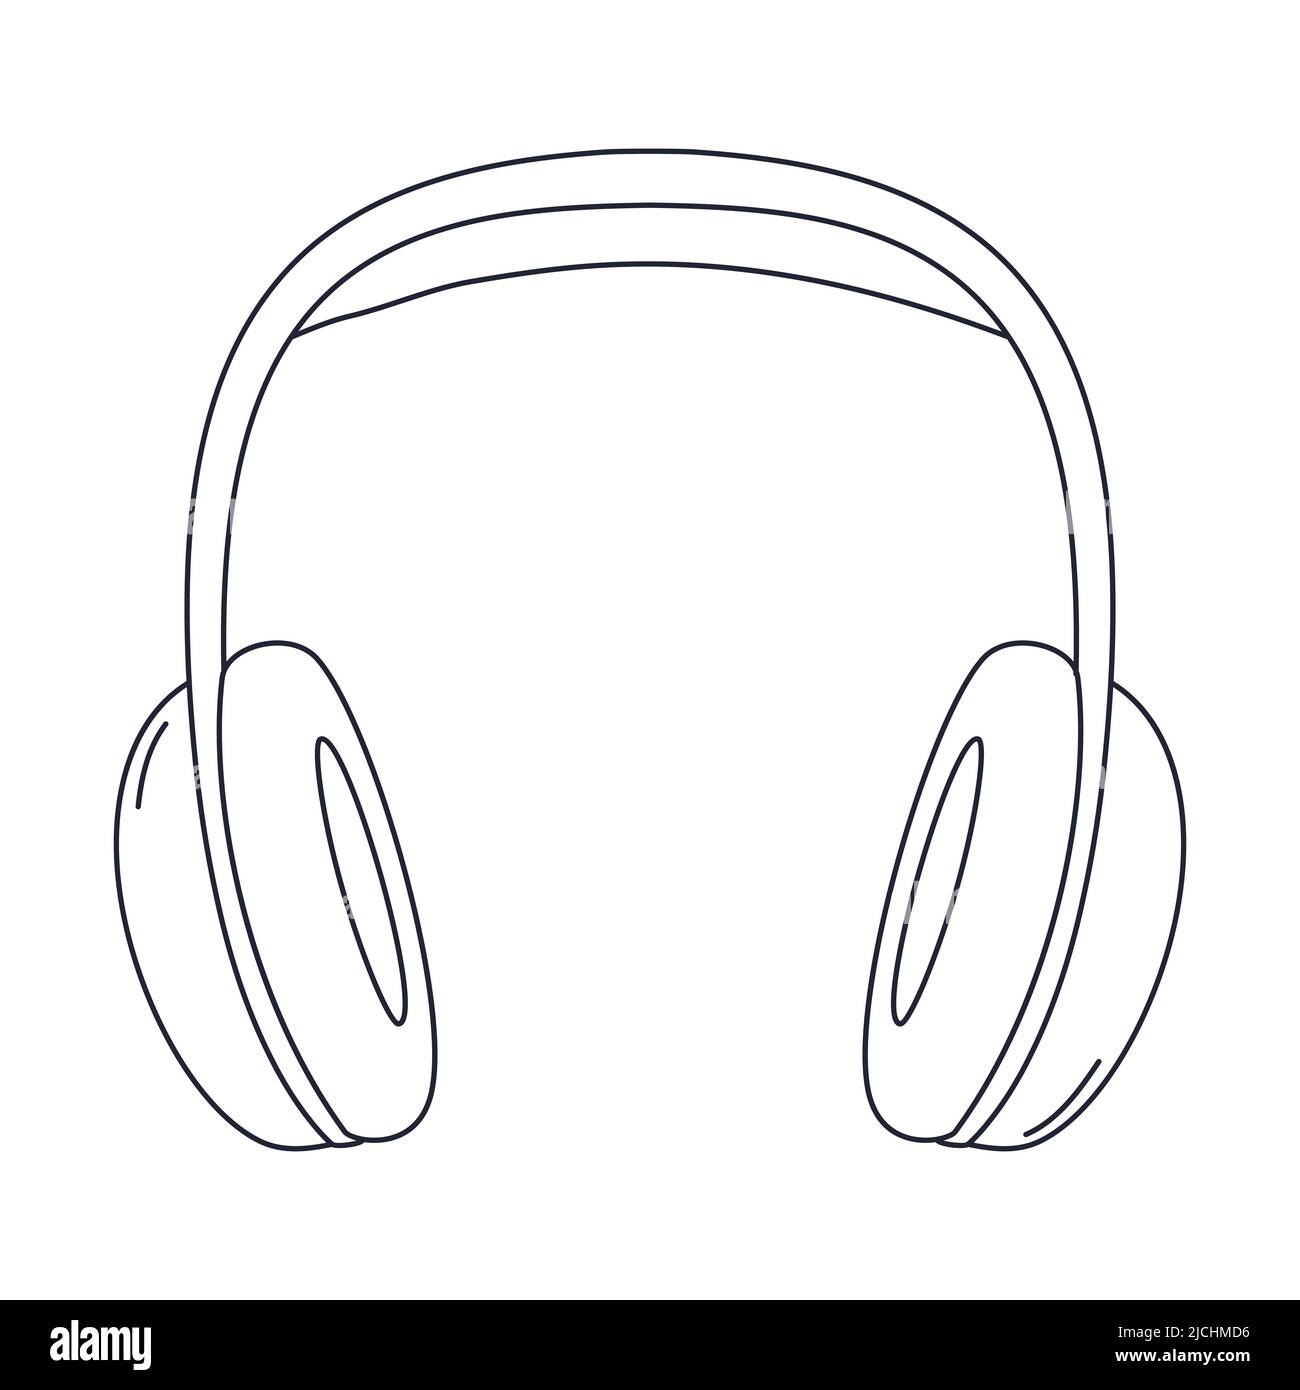 Stellen Sie professionelle Studio-Ohrhörer mit großen Ohrpolstern vor. Geräte für Podcasting, Online-Lernen, Musikhören. Linear schwarz weiß Stock Vektor